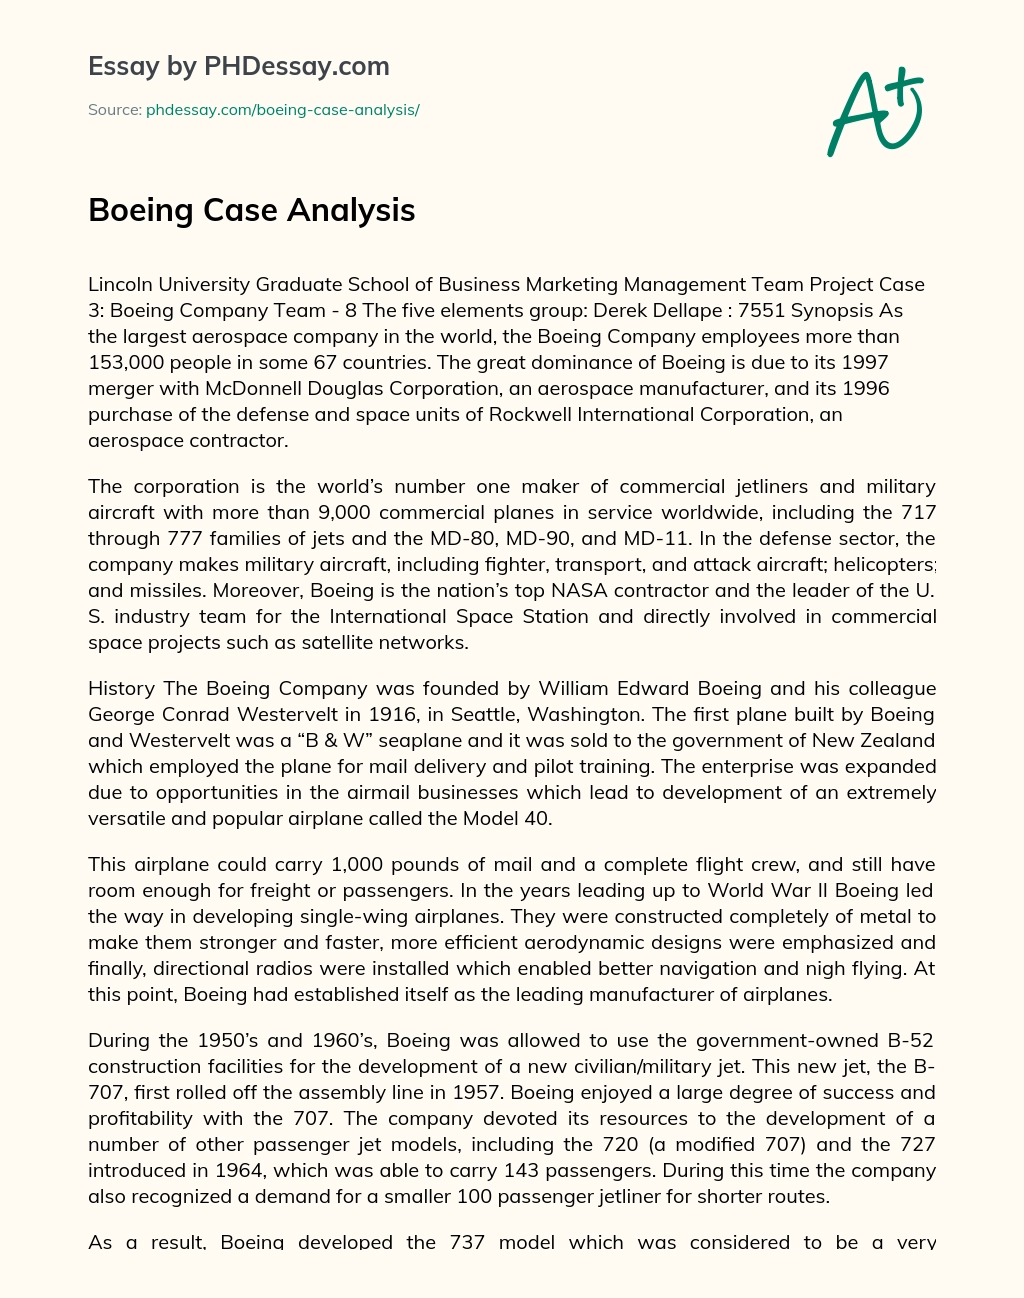 Boeing Case Analysis essay